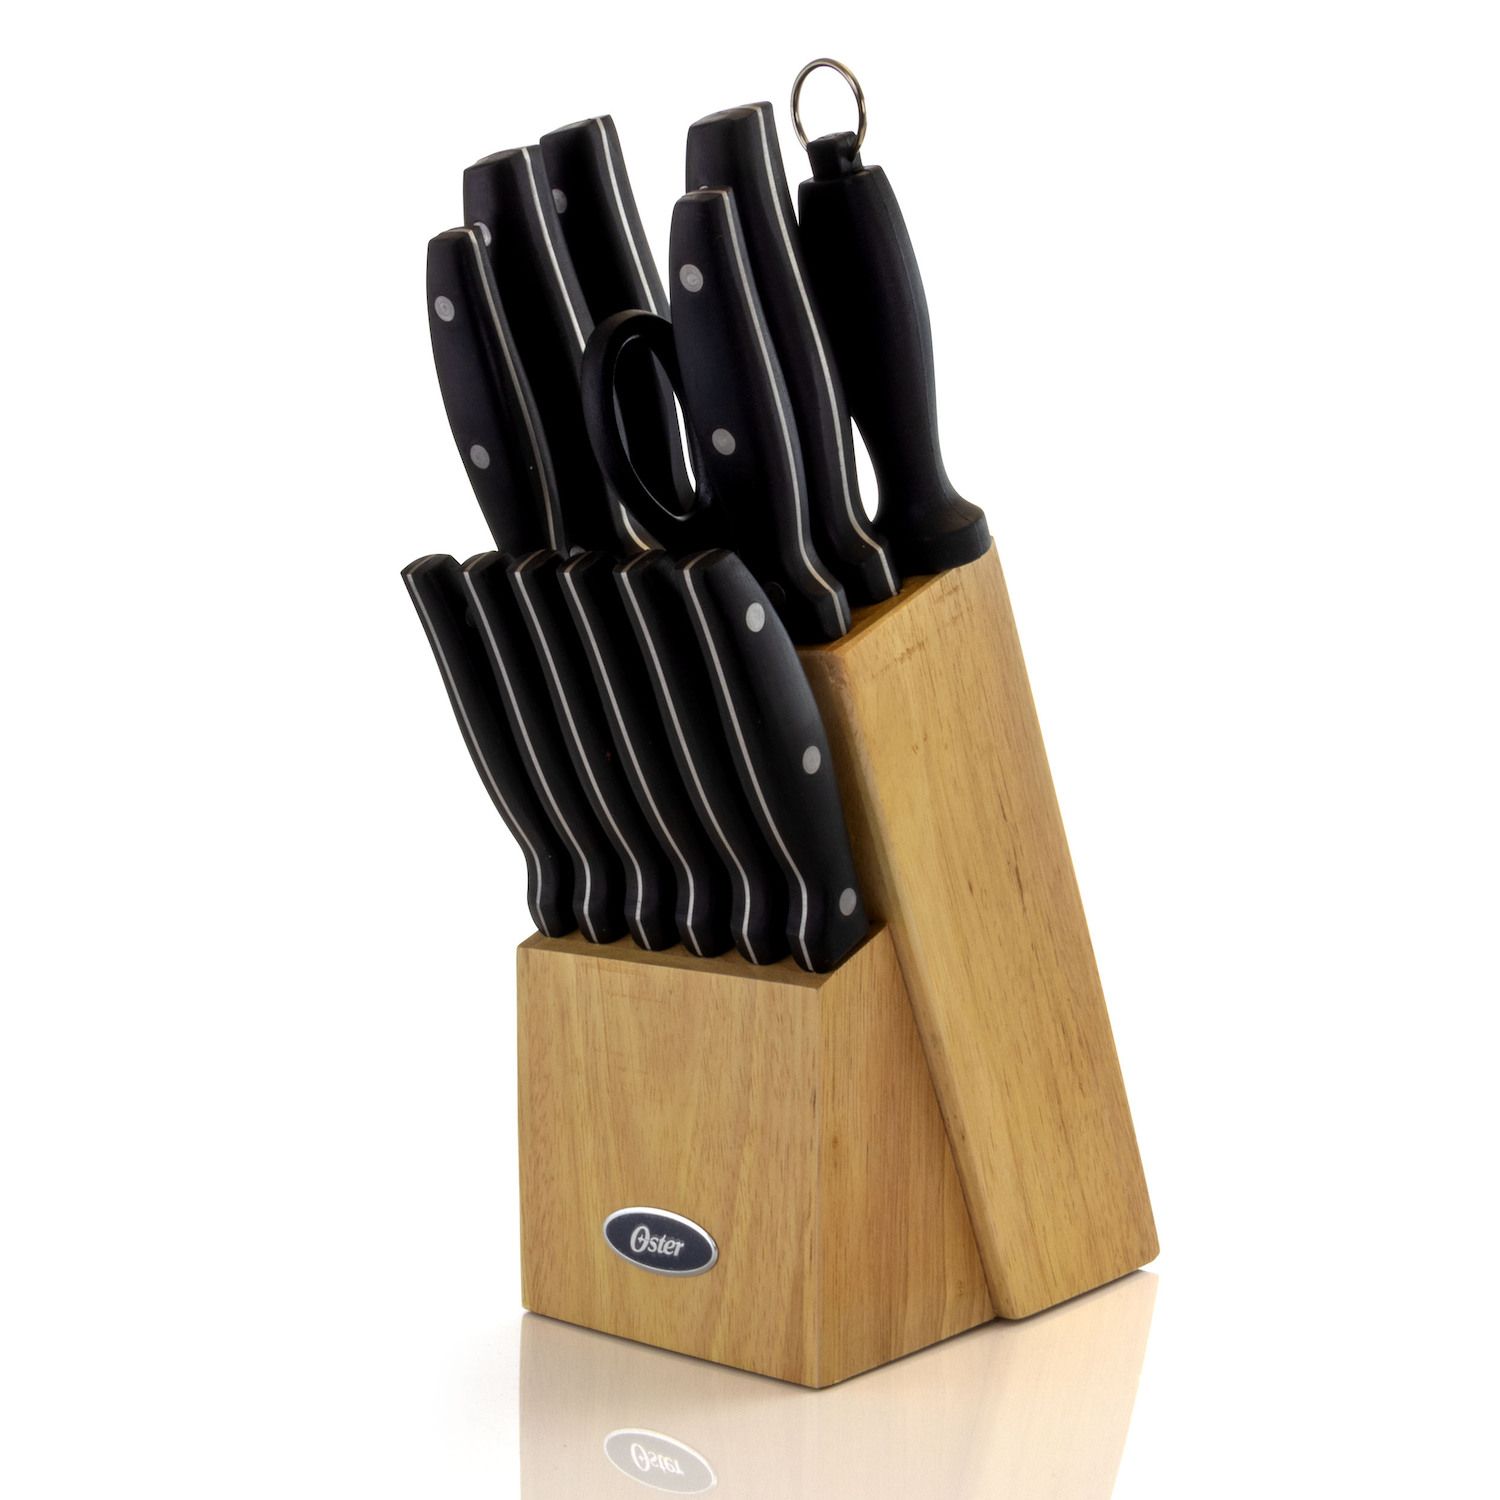 Oster Lindbergh 14 Piece Stainless Steel Cutlery Set Black Block, Teal  Handles,Teal/Black